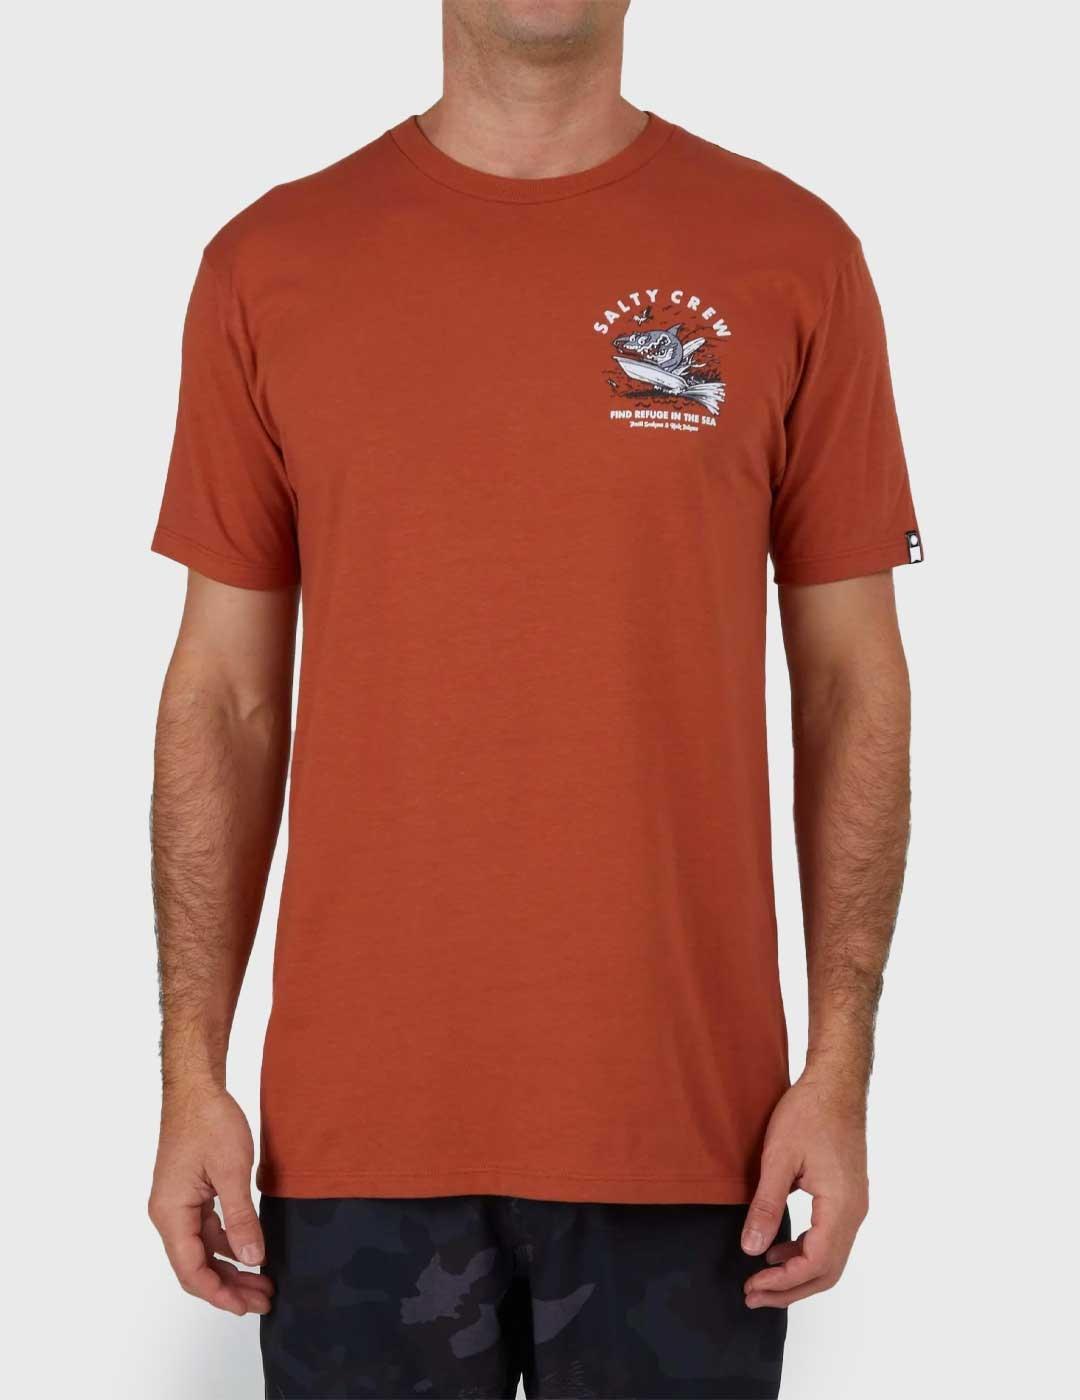 Salty Crew Hot Rod Shark Premium Camiseta naranja para hombr